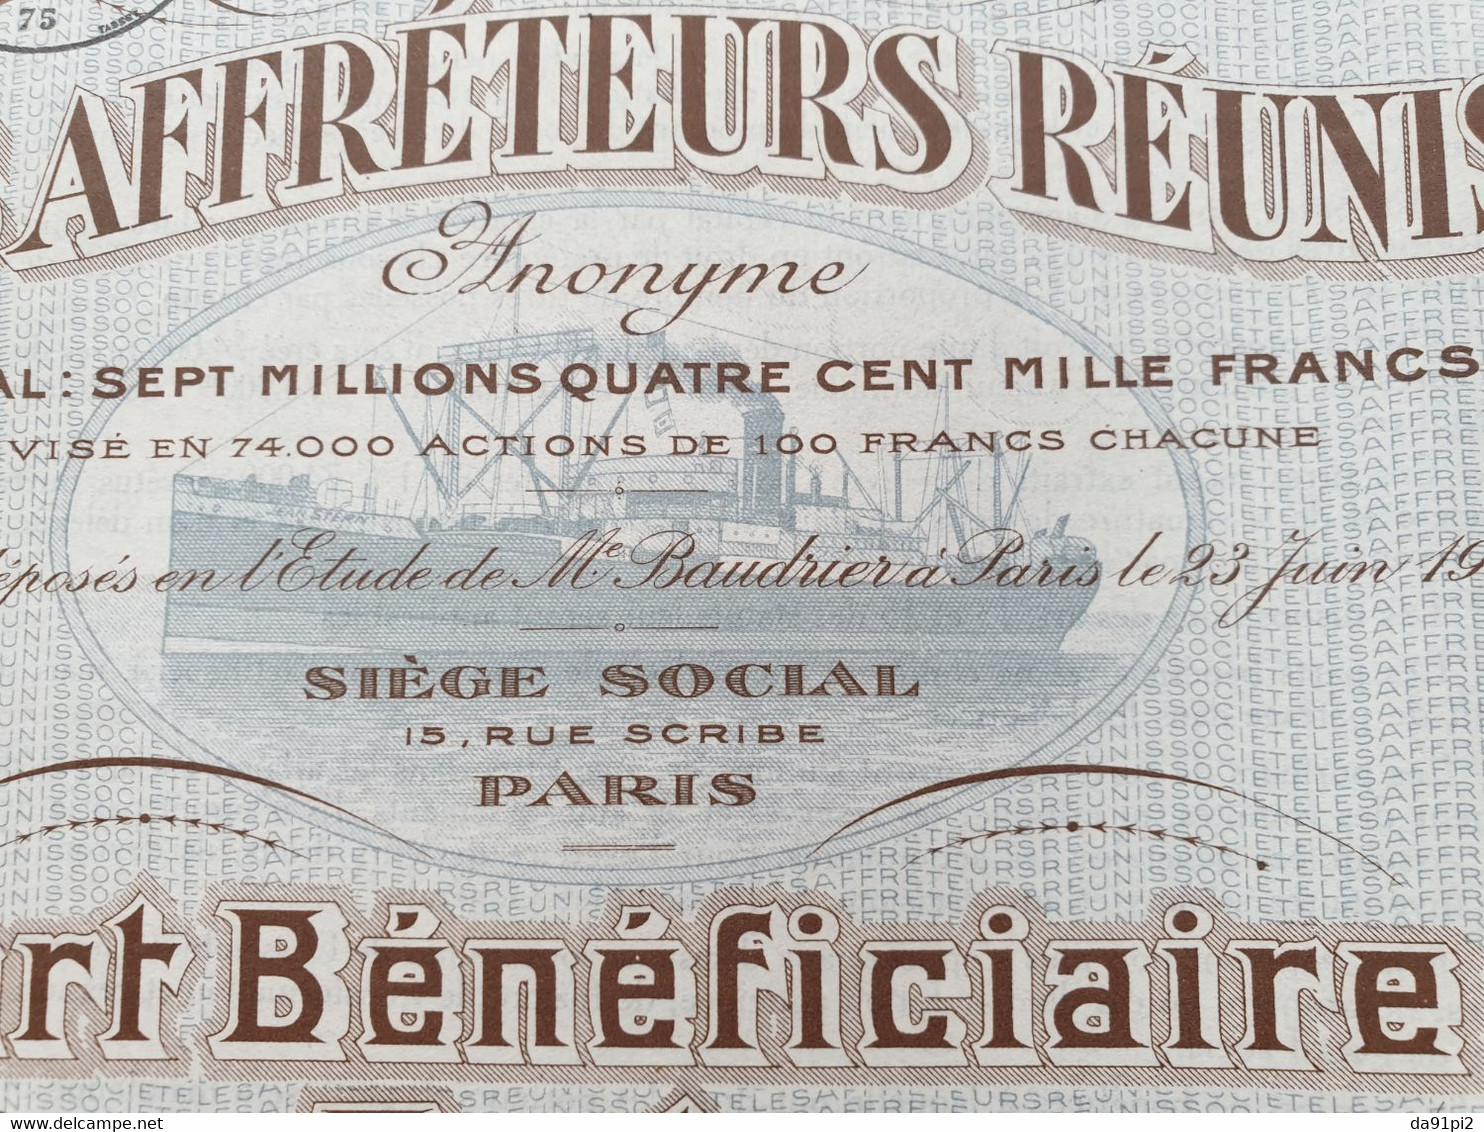 DECO Part Bénéficiaire Affréteurs Réunis 1920 - Navigazione